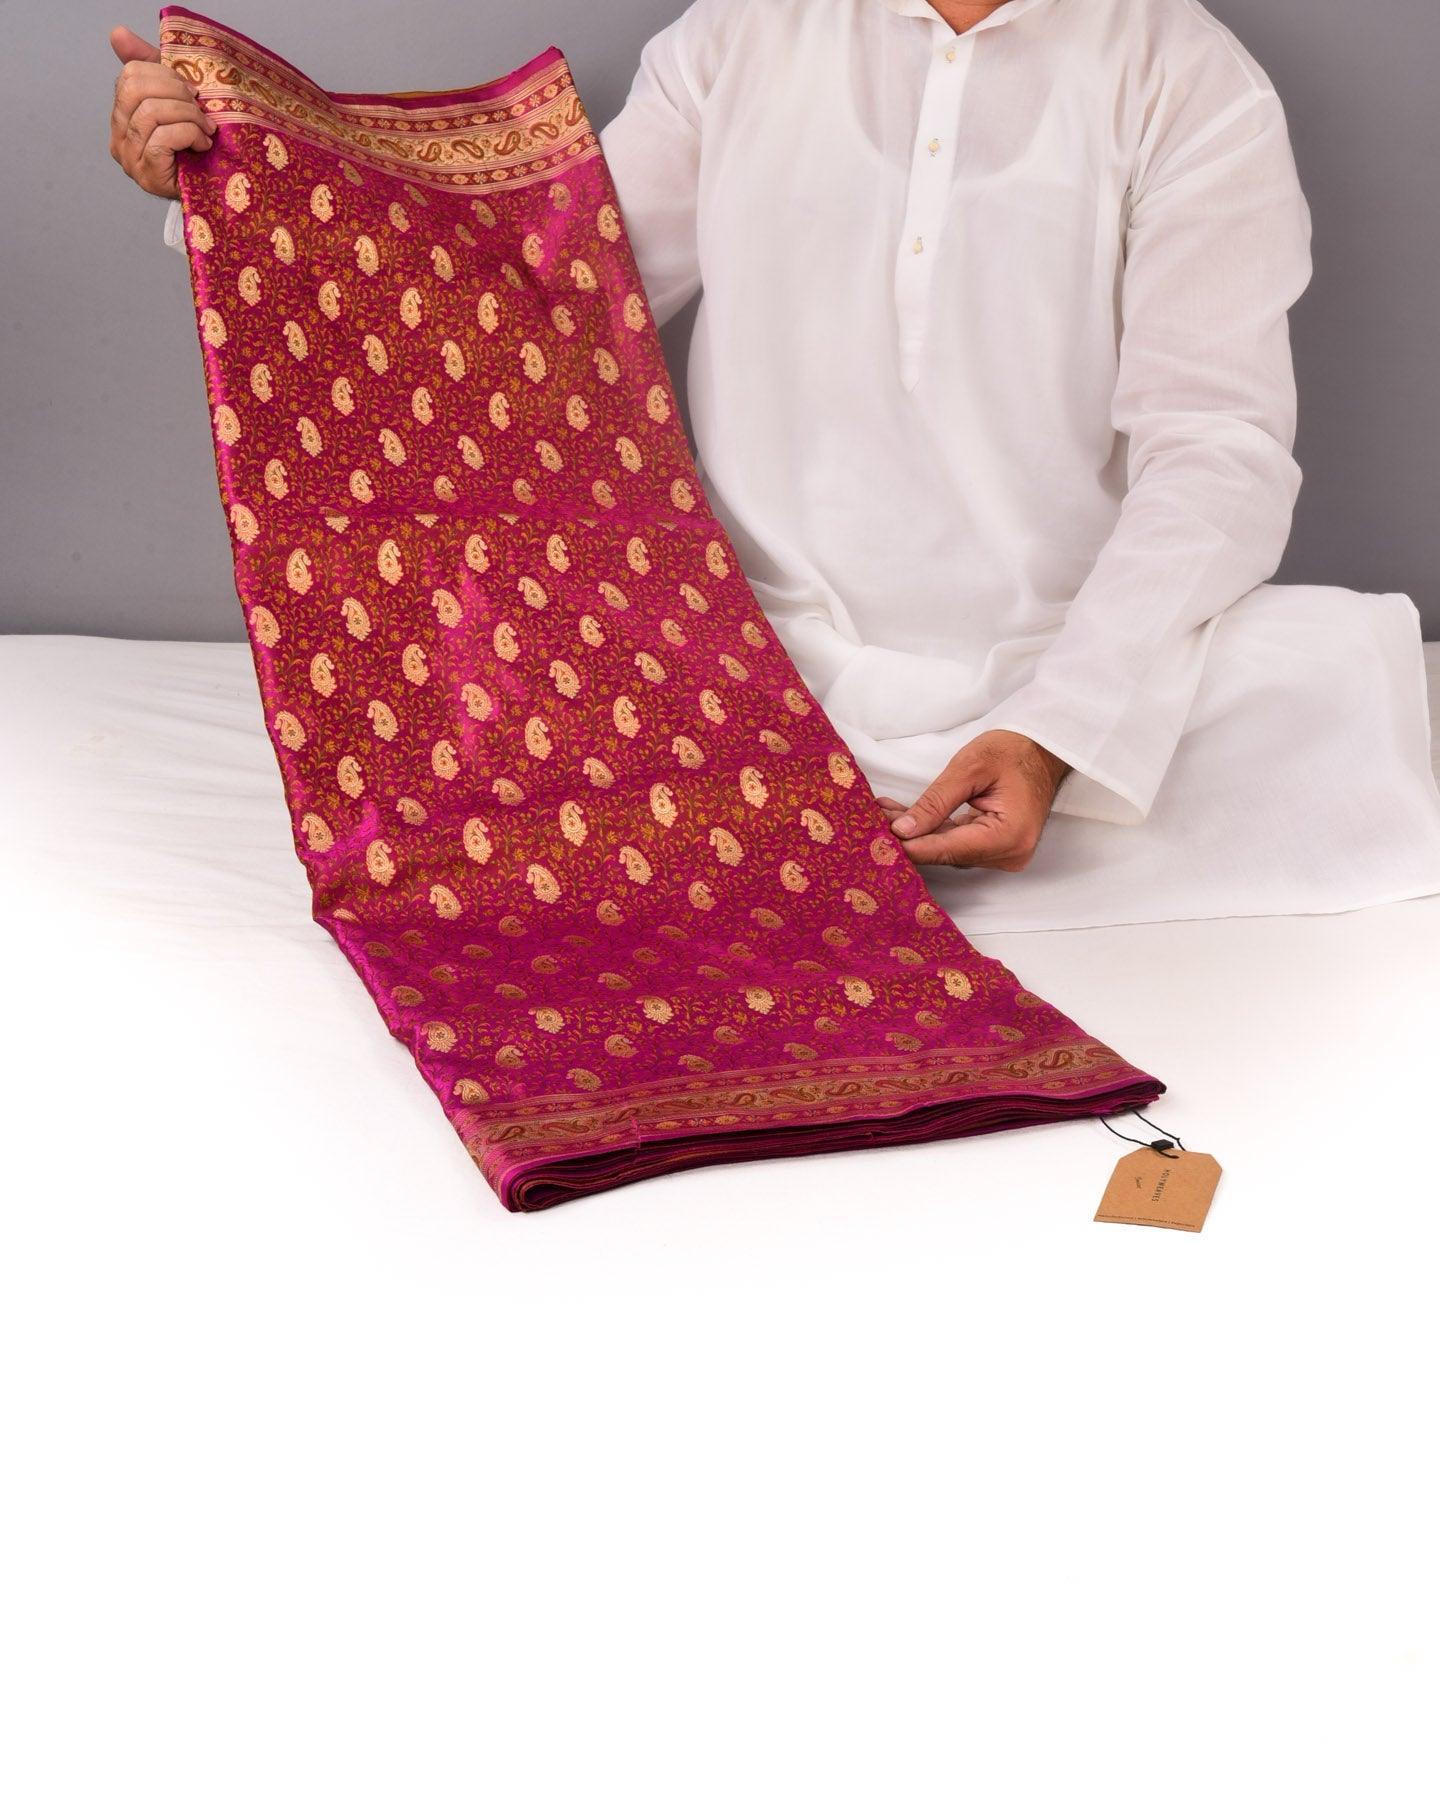 Regal Magenta Banarasi Tehri Jamawar Brocade Handwoven Katan Silk Saree with Zari Accents - By HolyWeaves, Benares